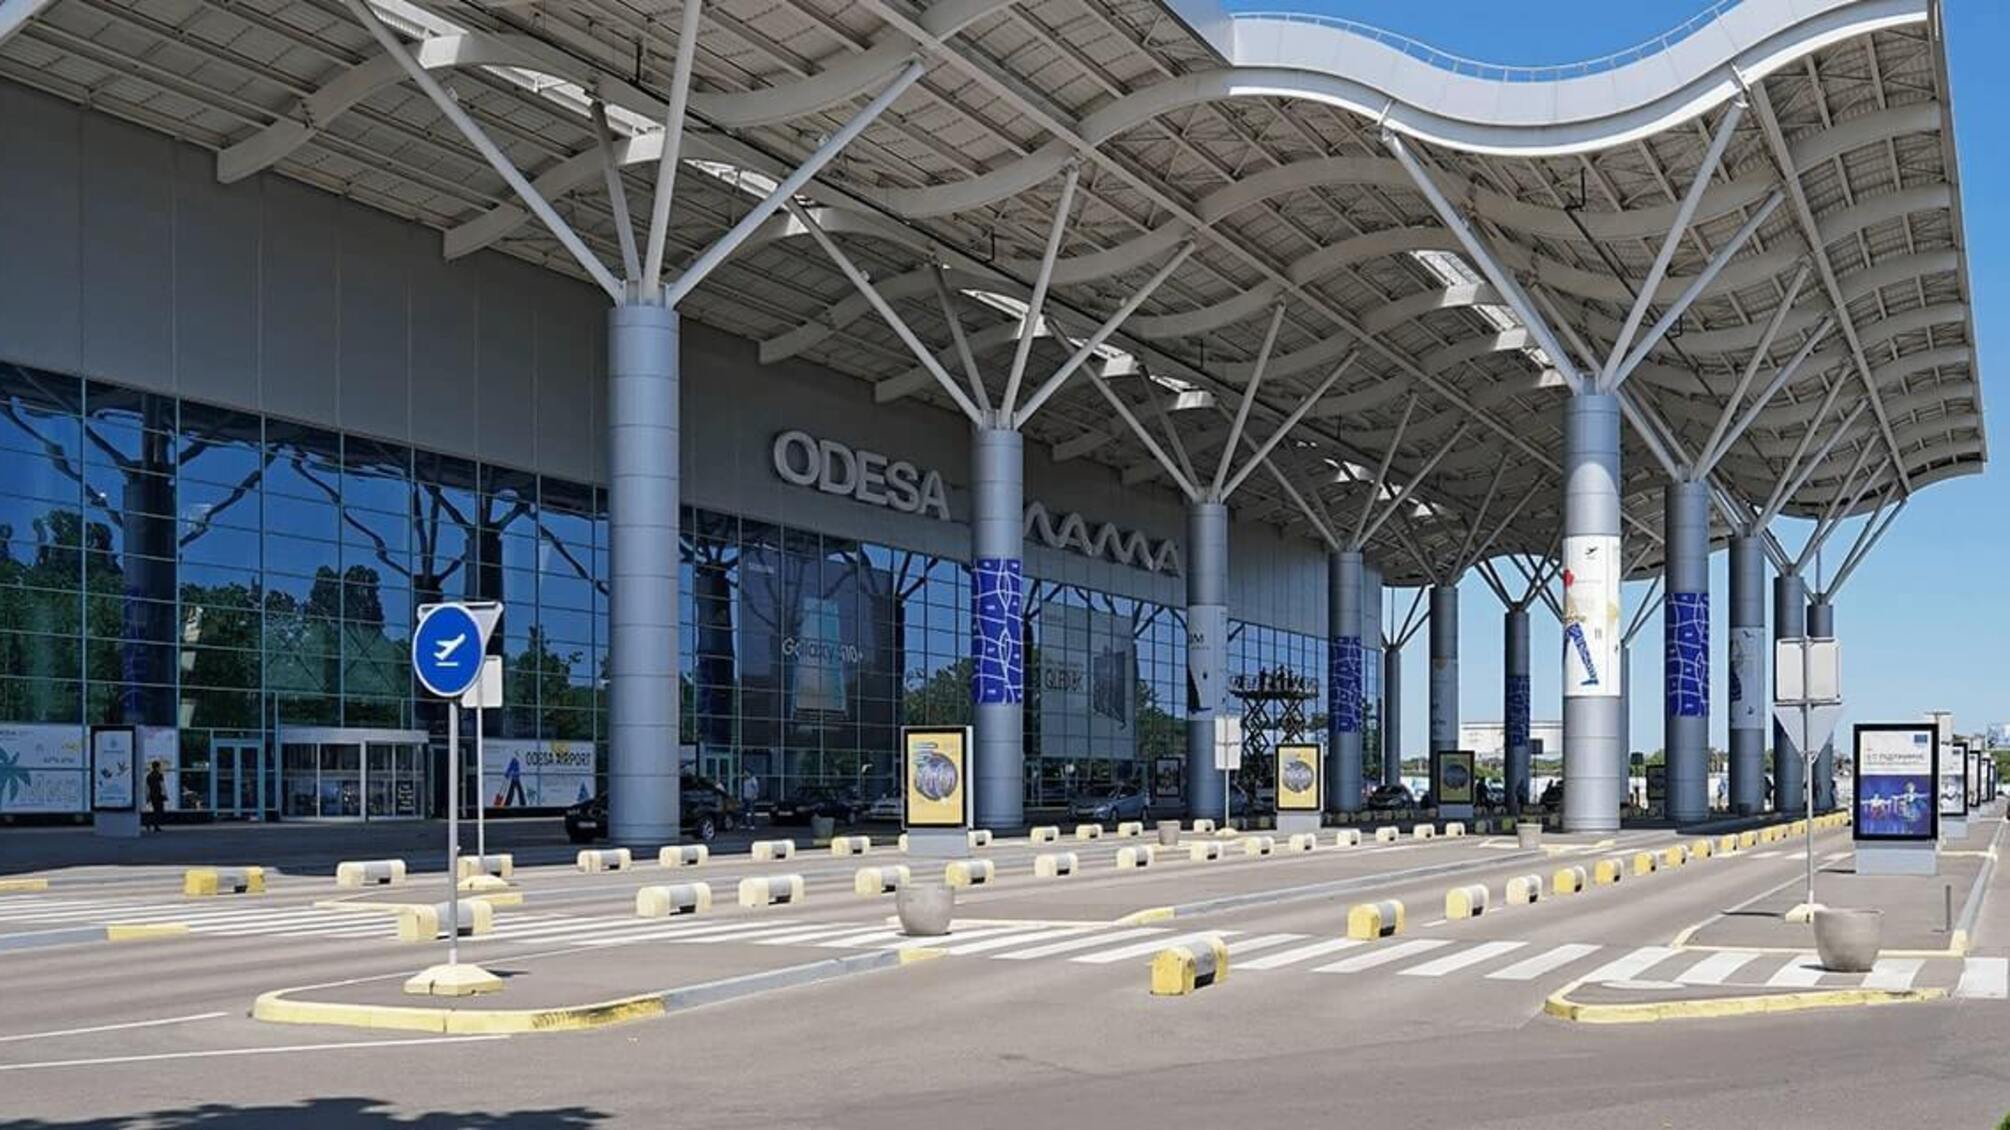 САП и НАБУ: мэрия Одессы вместе с бизнесменами присвоили аэропорт 'Одесса' и заложили его в банк